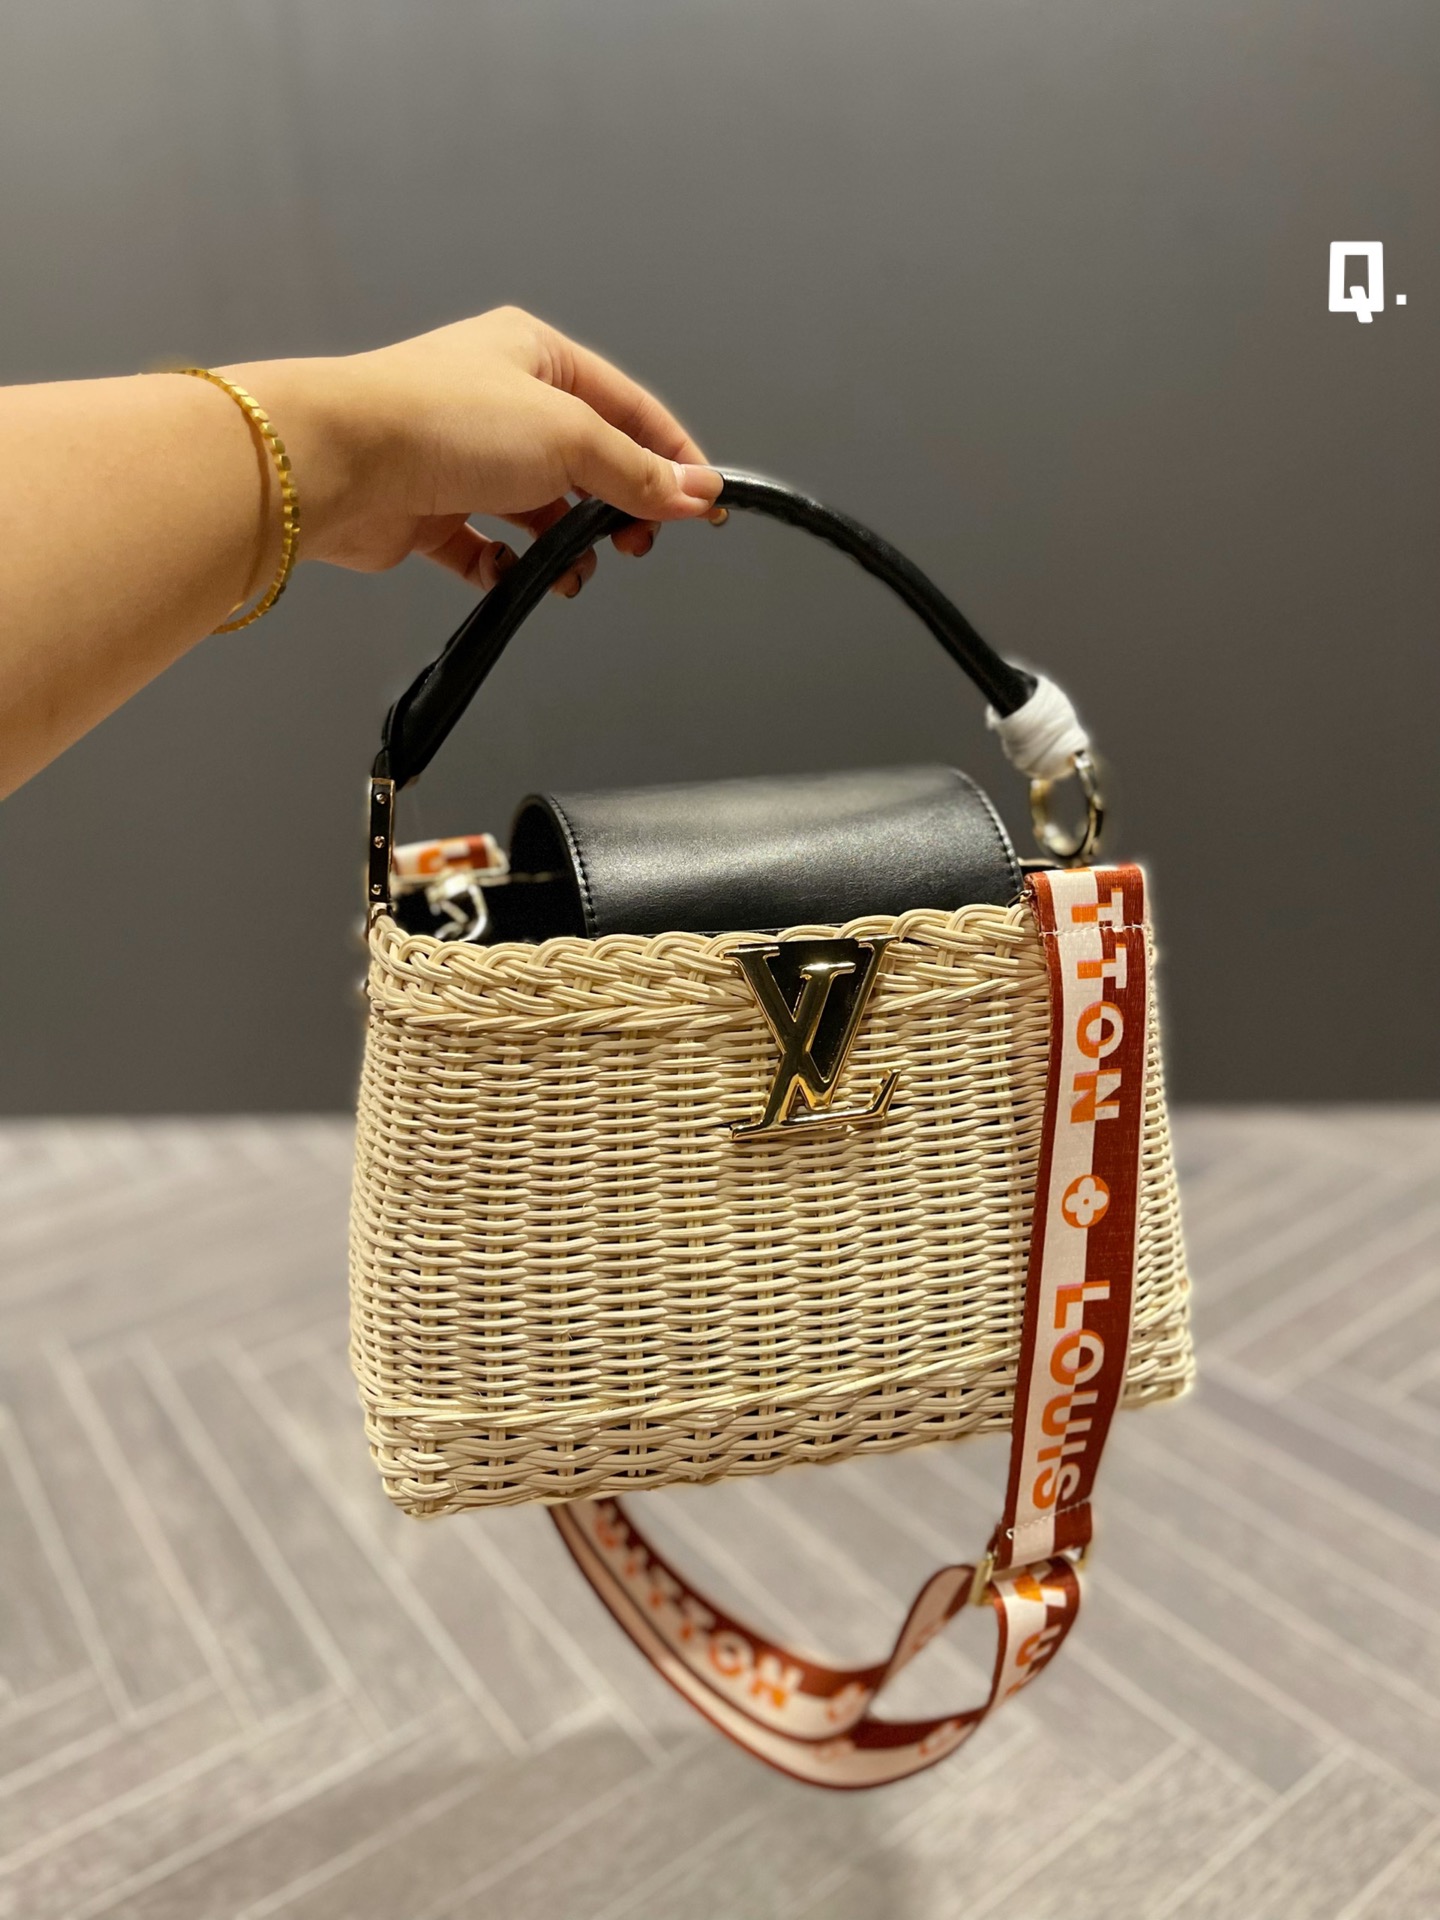 LV Louis Vuitton woven style handbags 